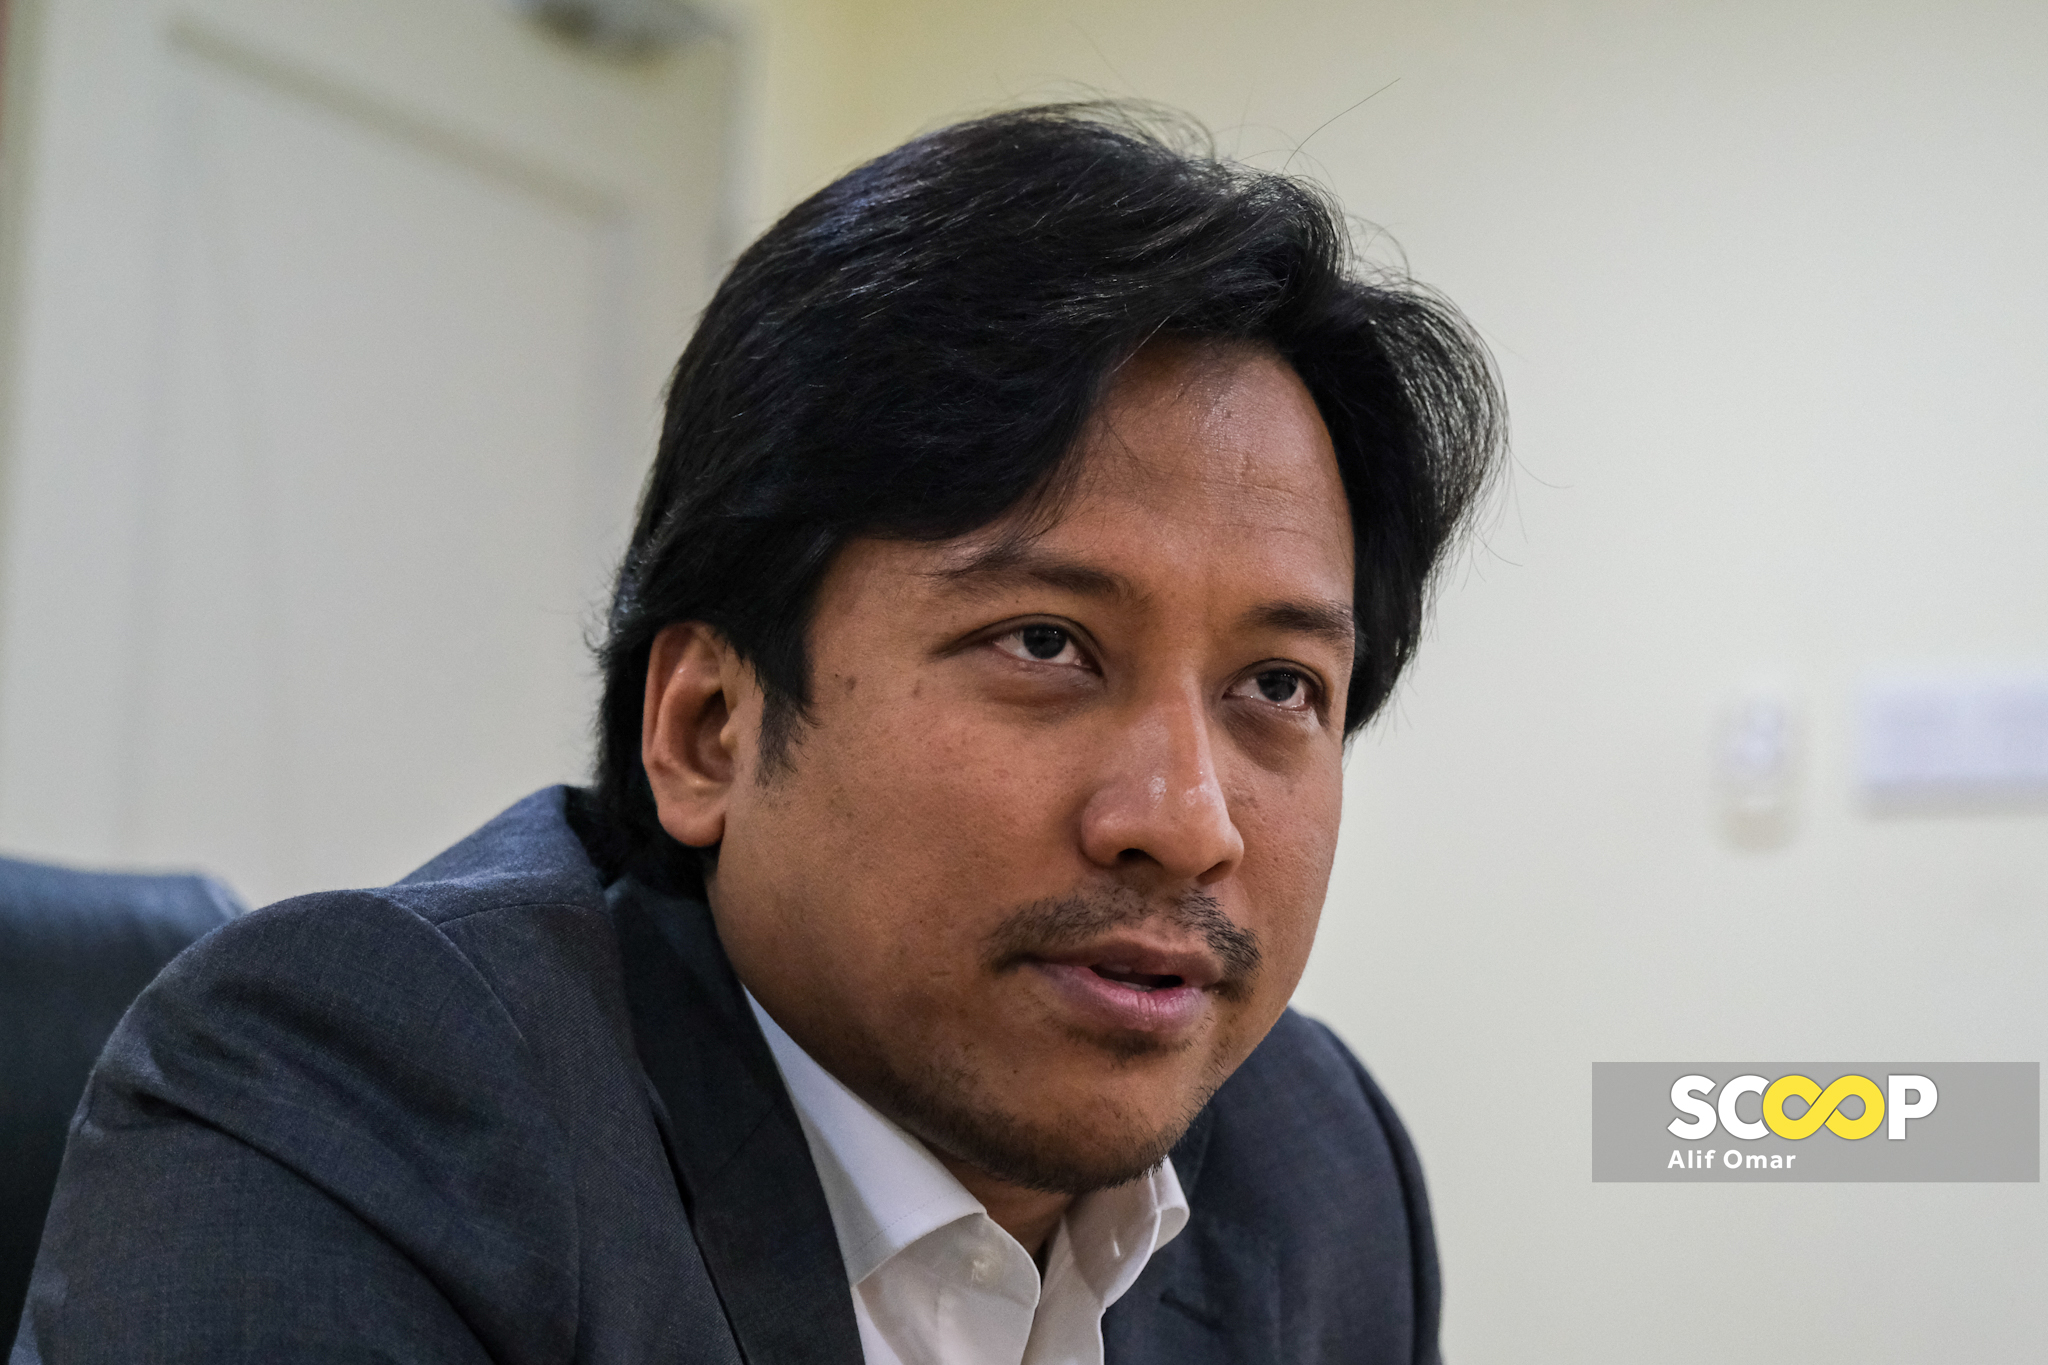 Selangor promosi Pelancongan Sukan, perkasa keusahawanan basmi pengangguran, ‘kita ada banyak perancangan’: Najwan